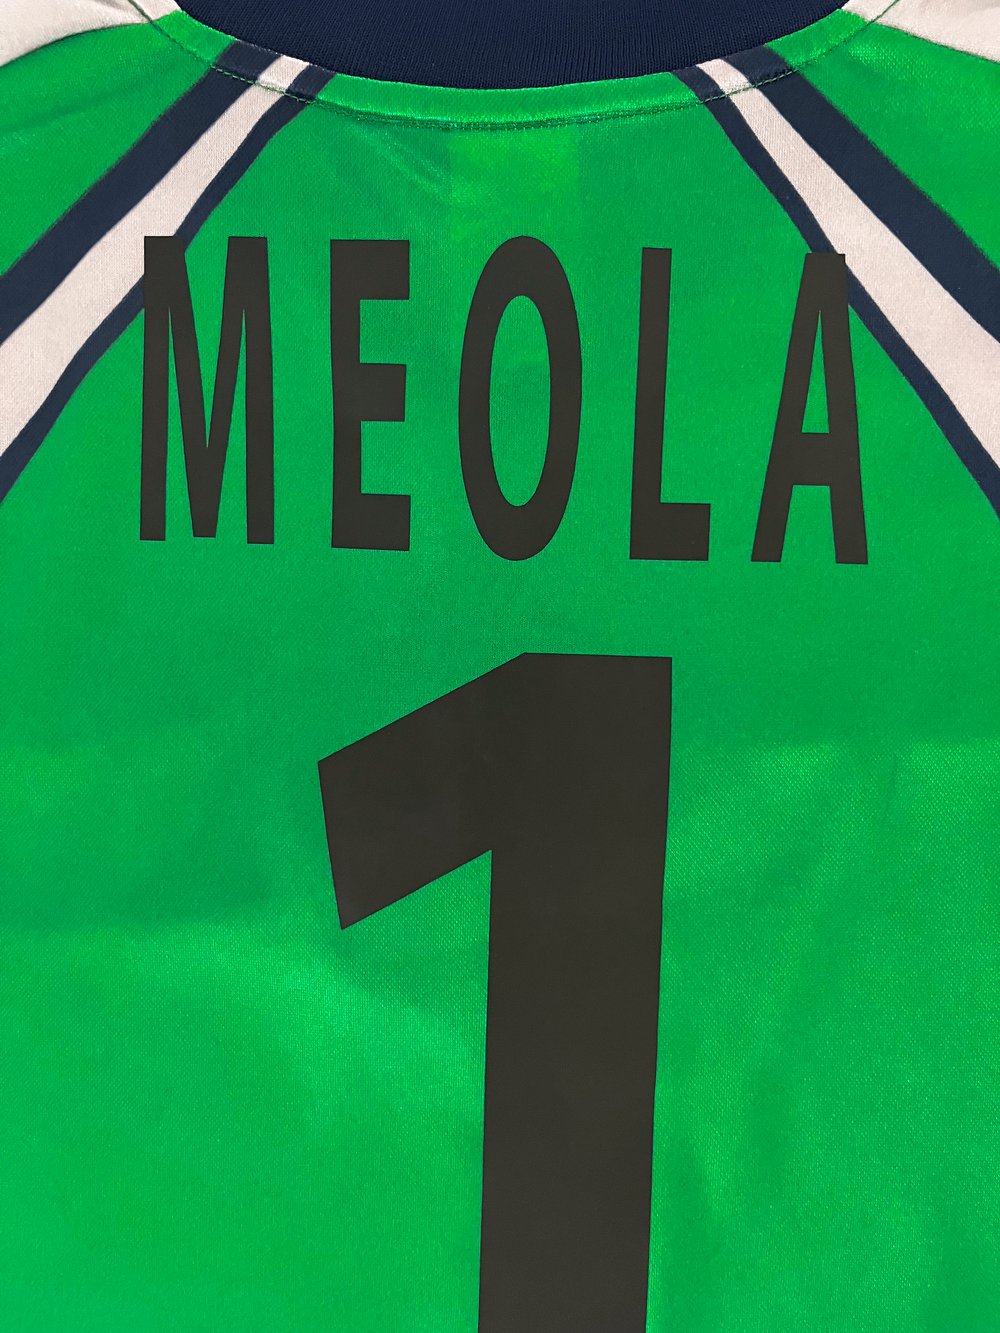 meola-06.jpg